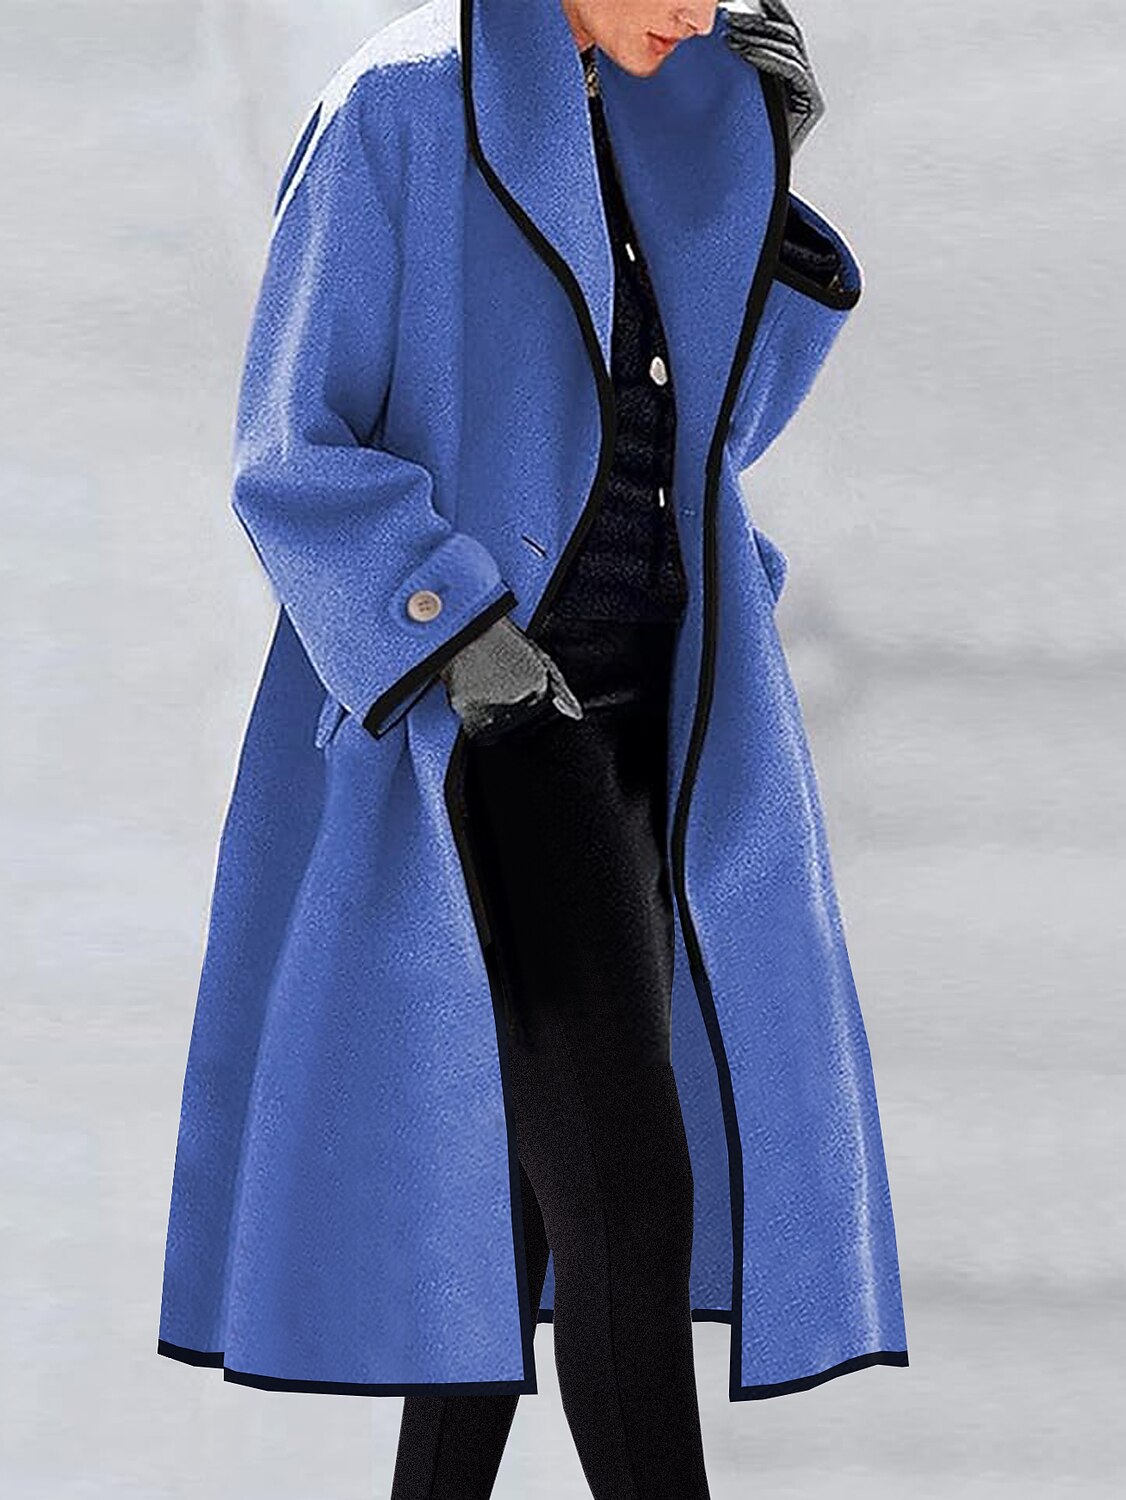 Shepicker Women's Long Overcoat Single Breasted Lapel Trench Coat